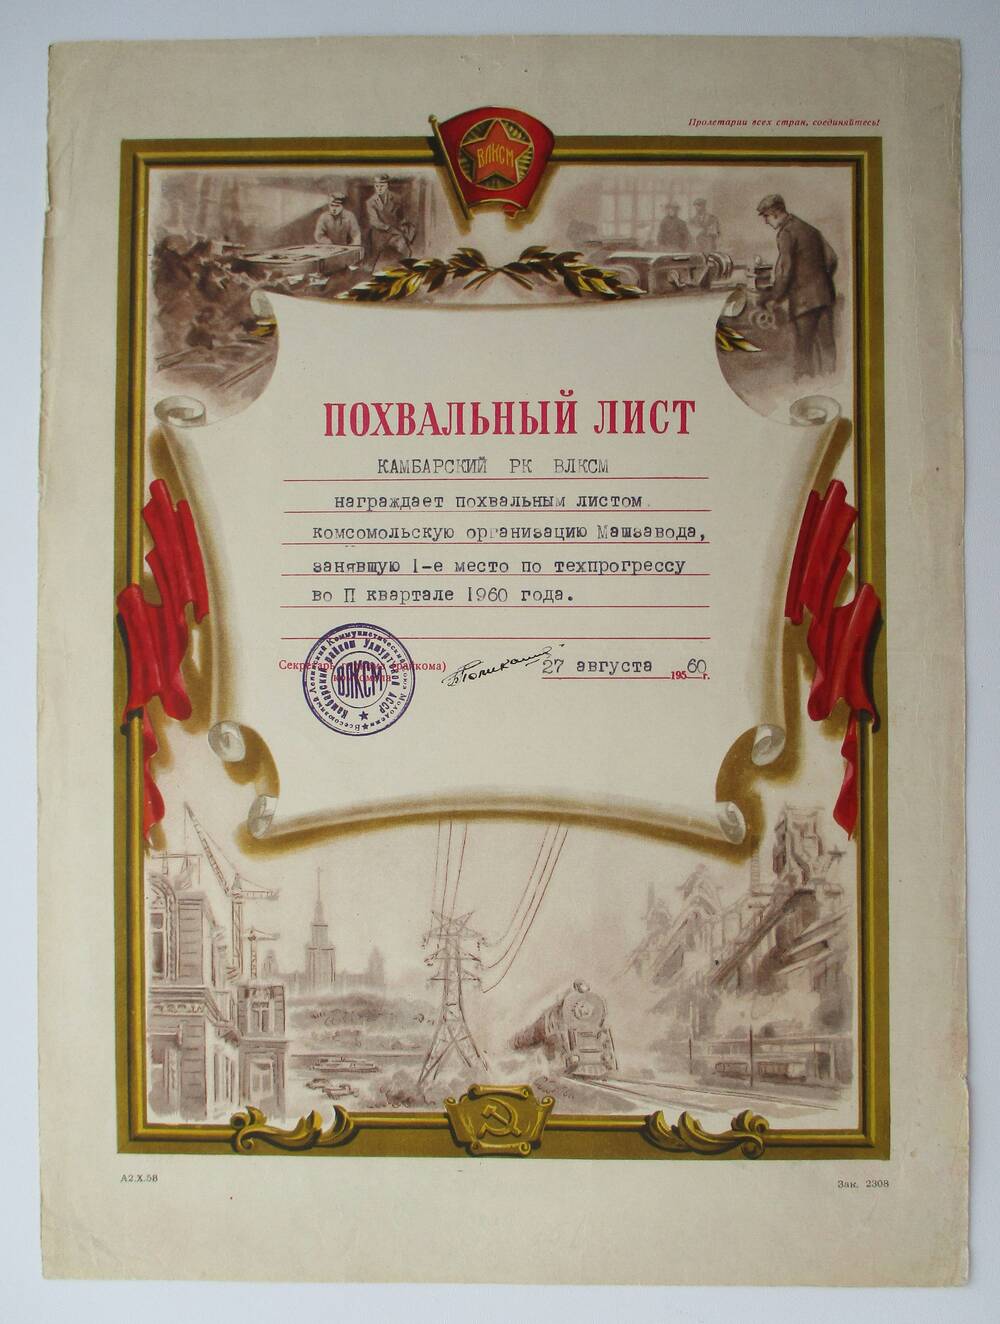 Похвальный лист от РК ВЛКСМ Комсомольской организации Машзавода за 1 место по тех.прогрессу 27 августа 1960г.